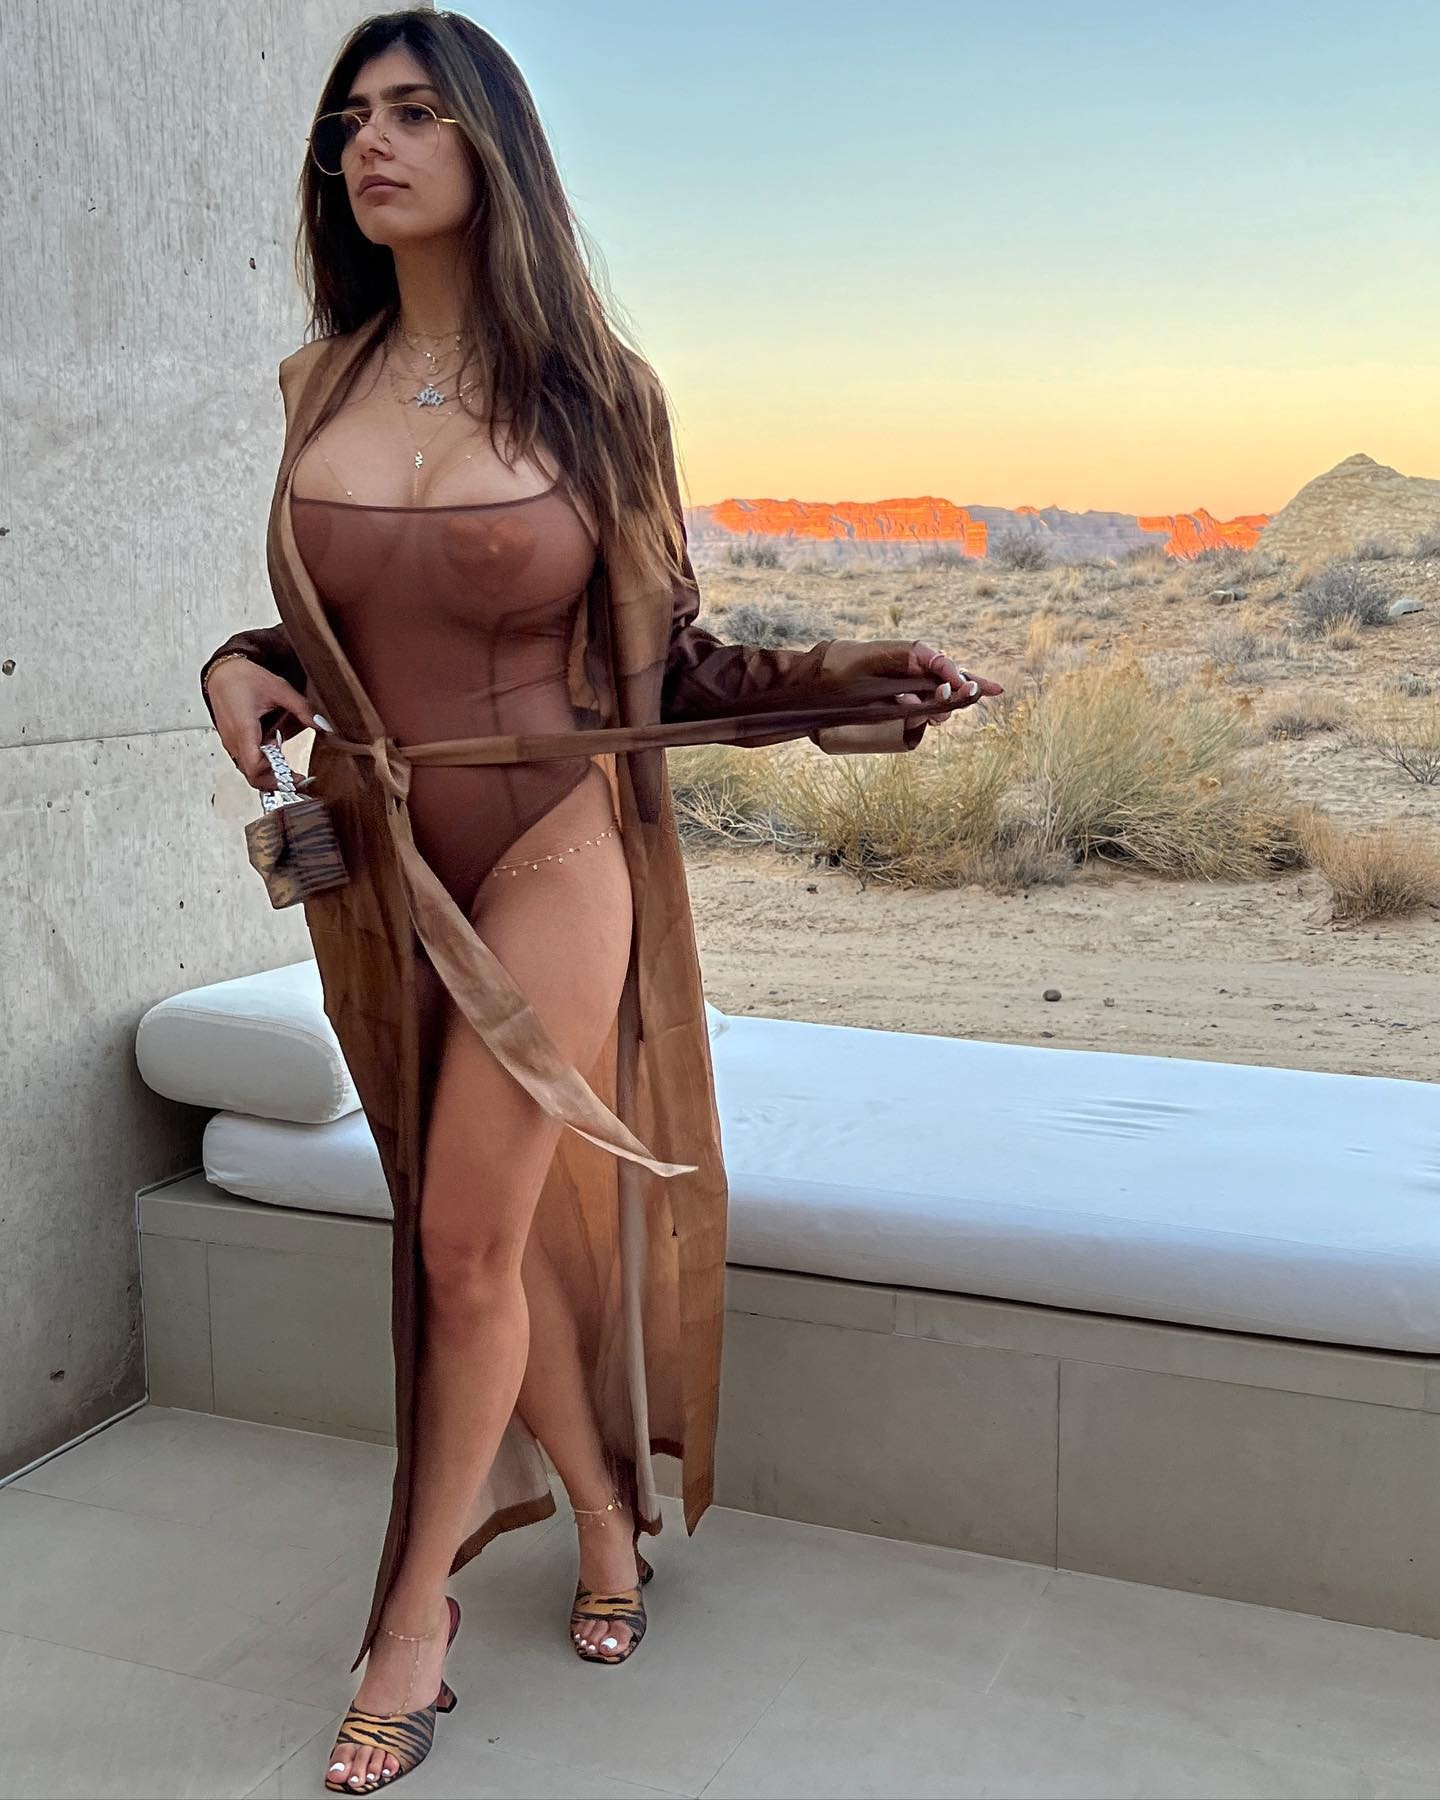 Mia Khalifa em fotos feitas no deserto (Foto: reprodução instagram)